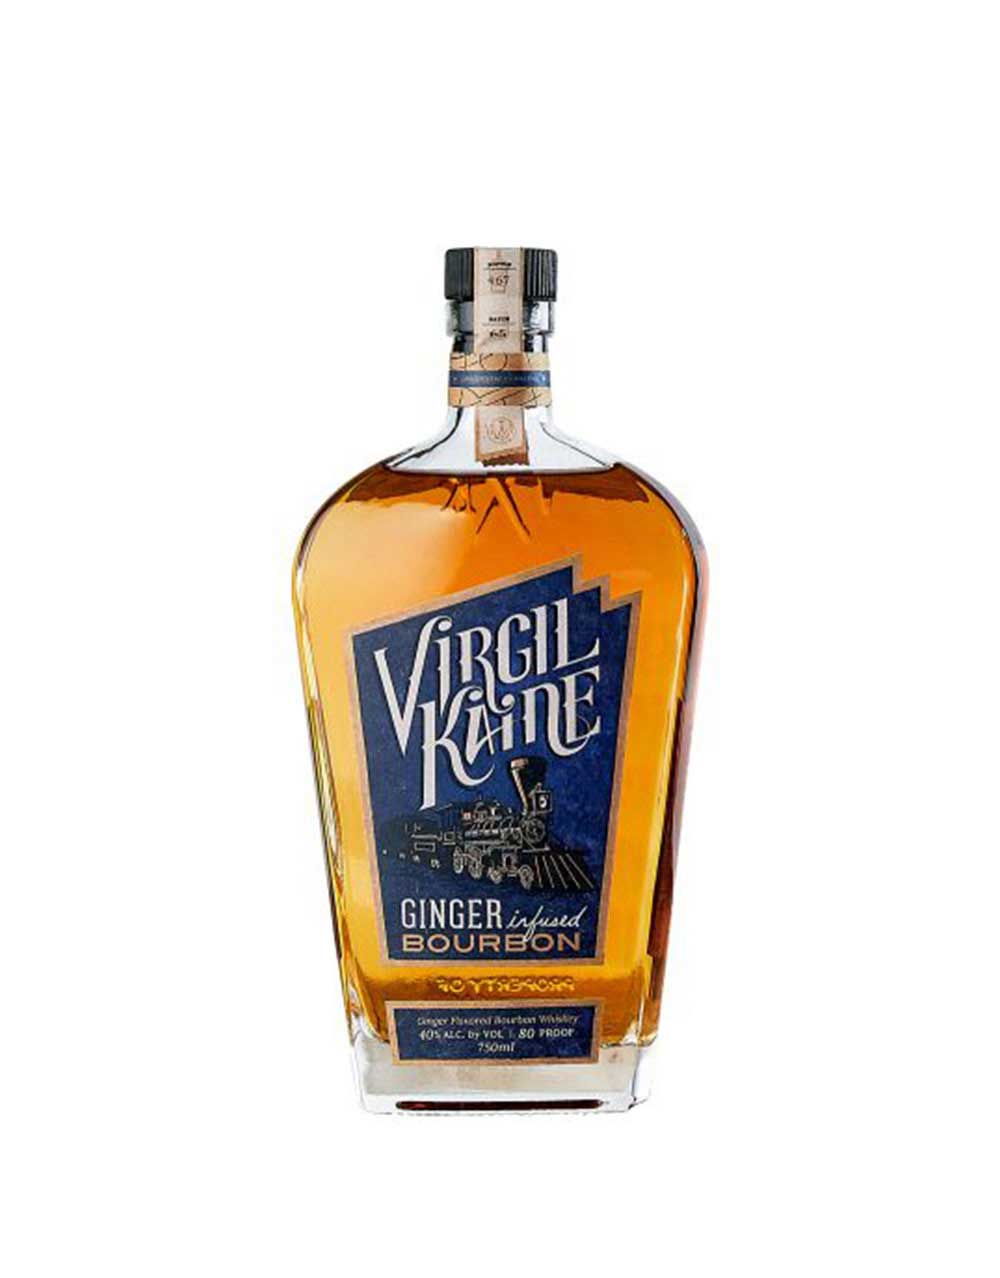 Virgil Kaine Ginger Infused Bourbon Whiskey